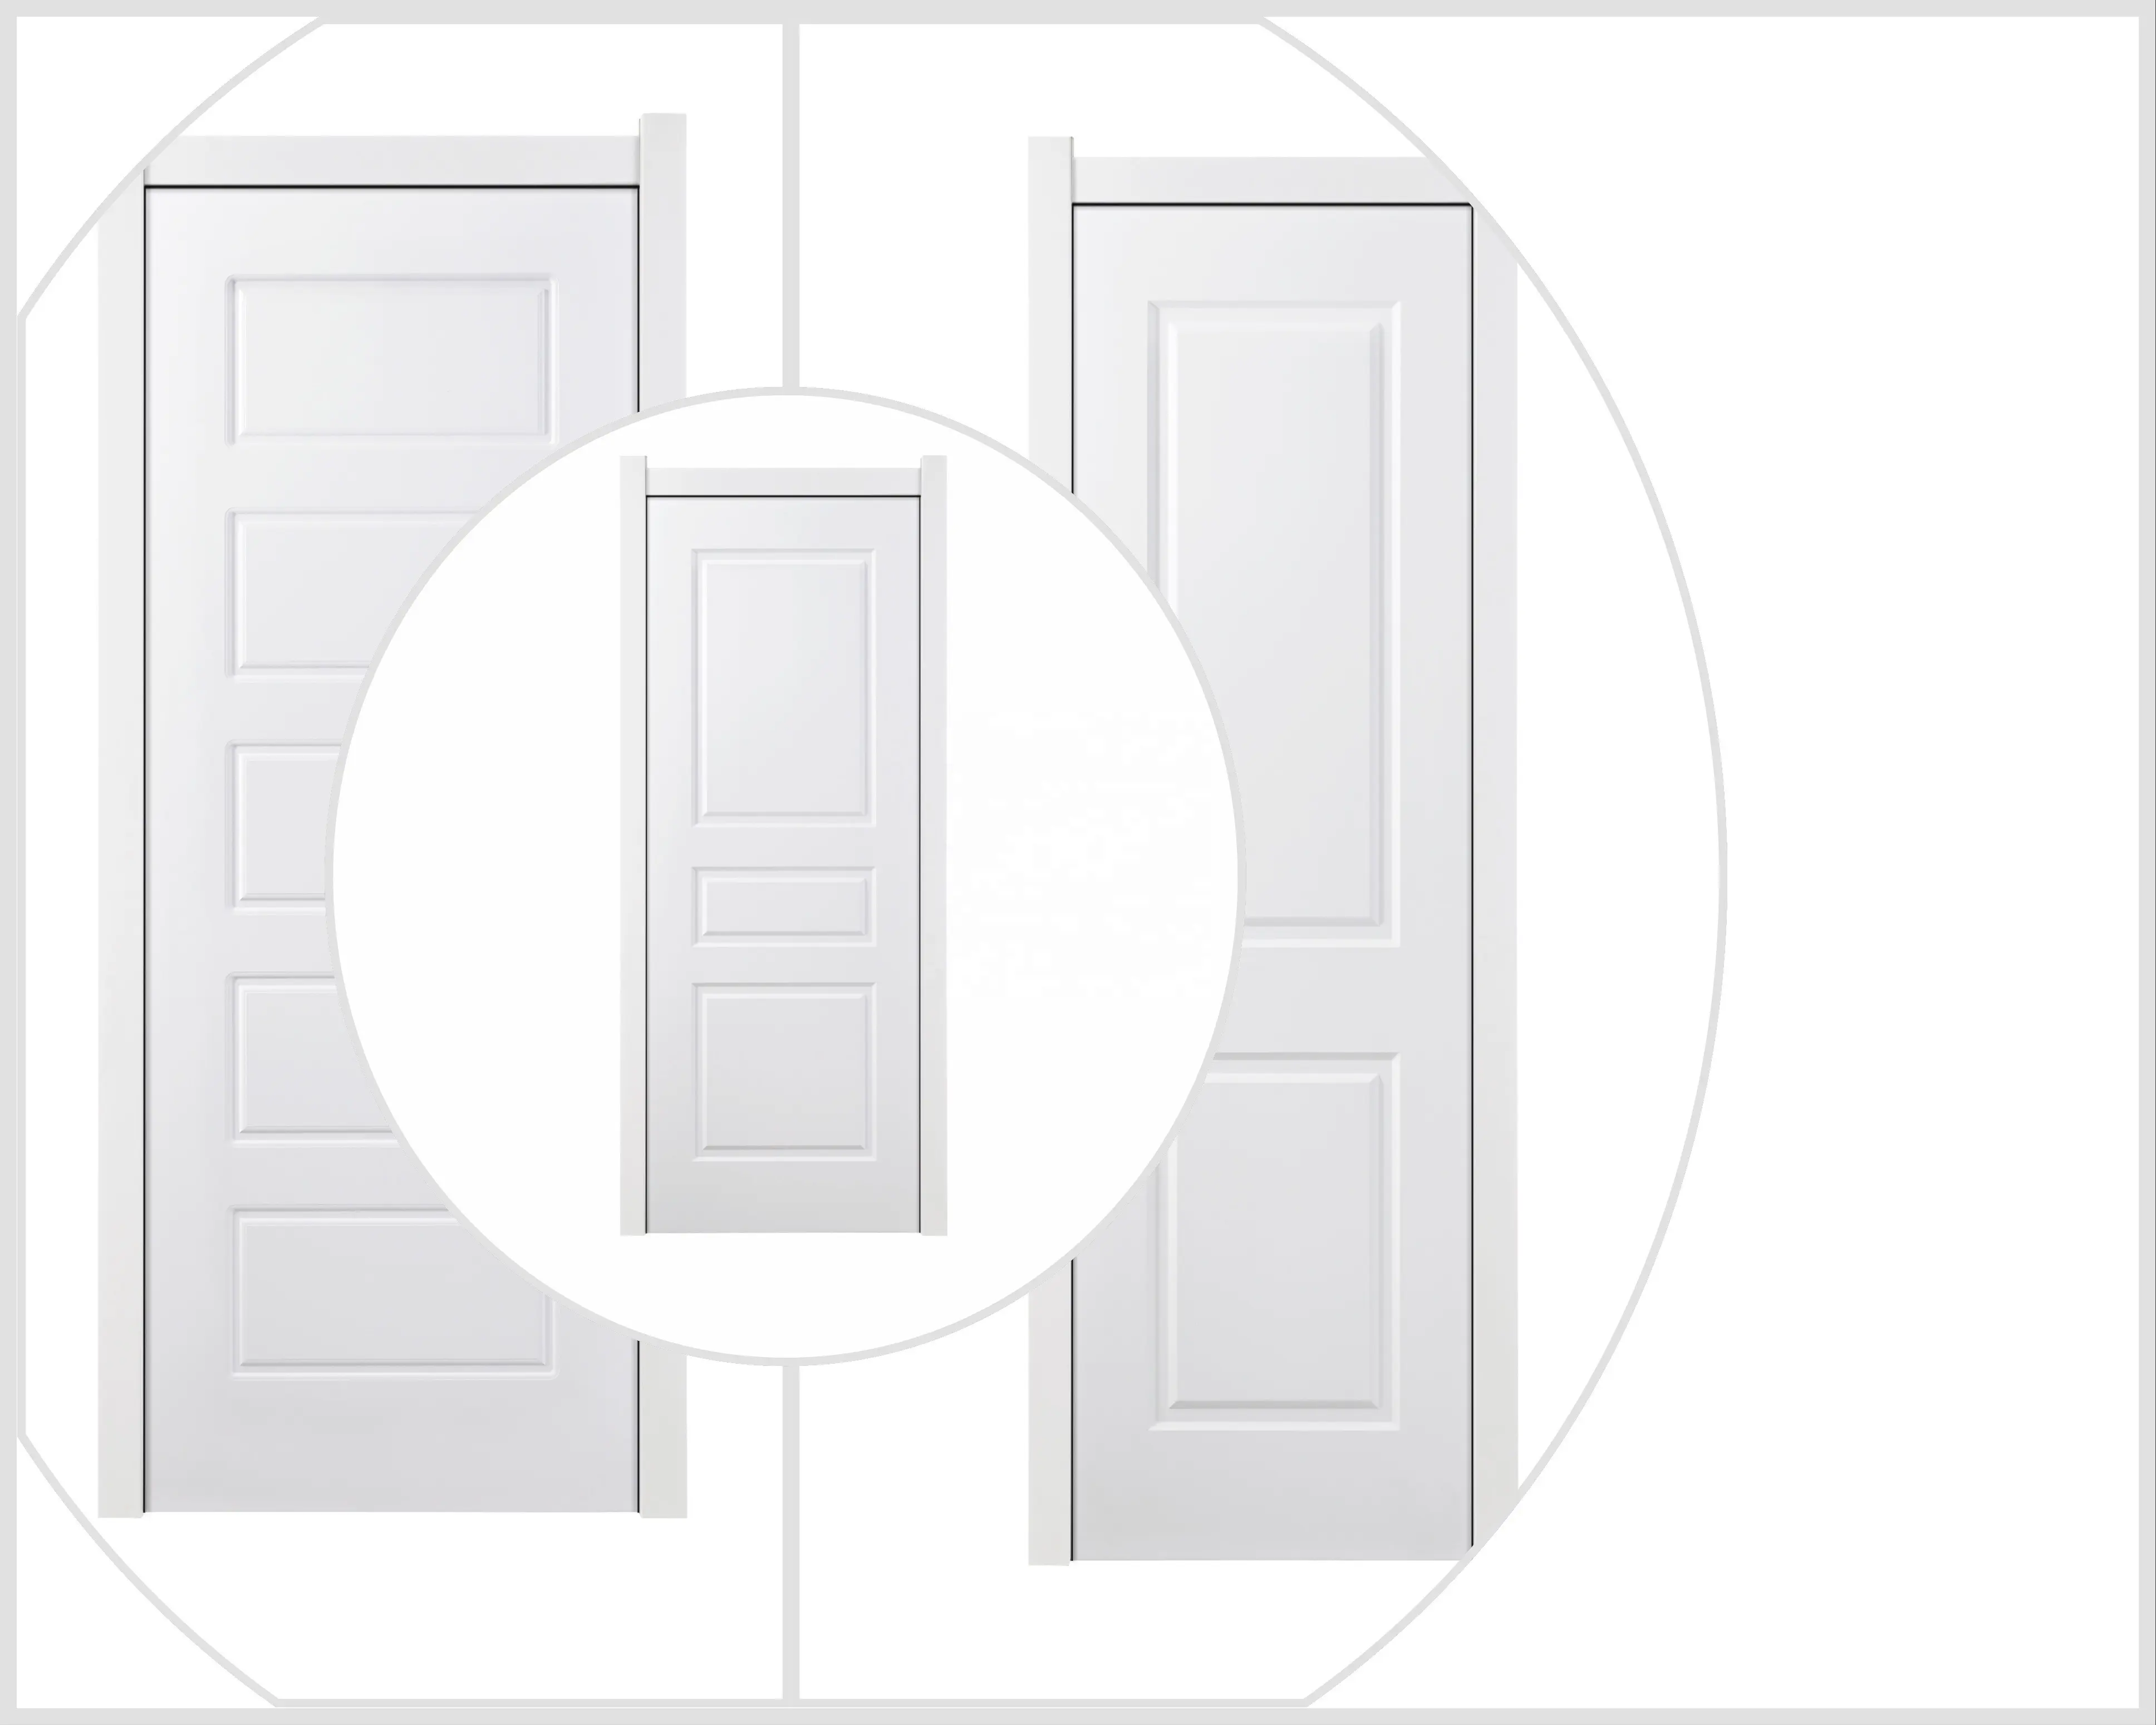 Quarto barato mais recente design interior branco pvc revestido mdf oco núcleo porta de madeira para salas